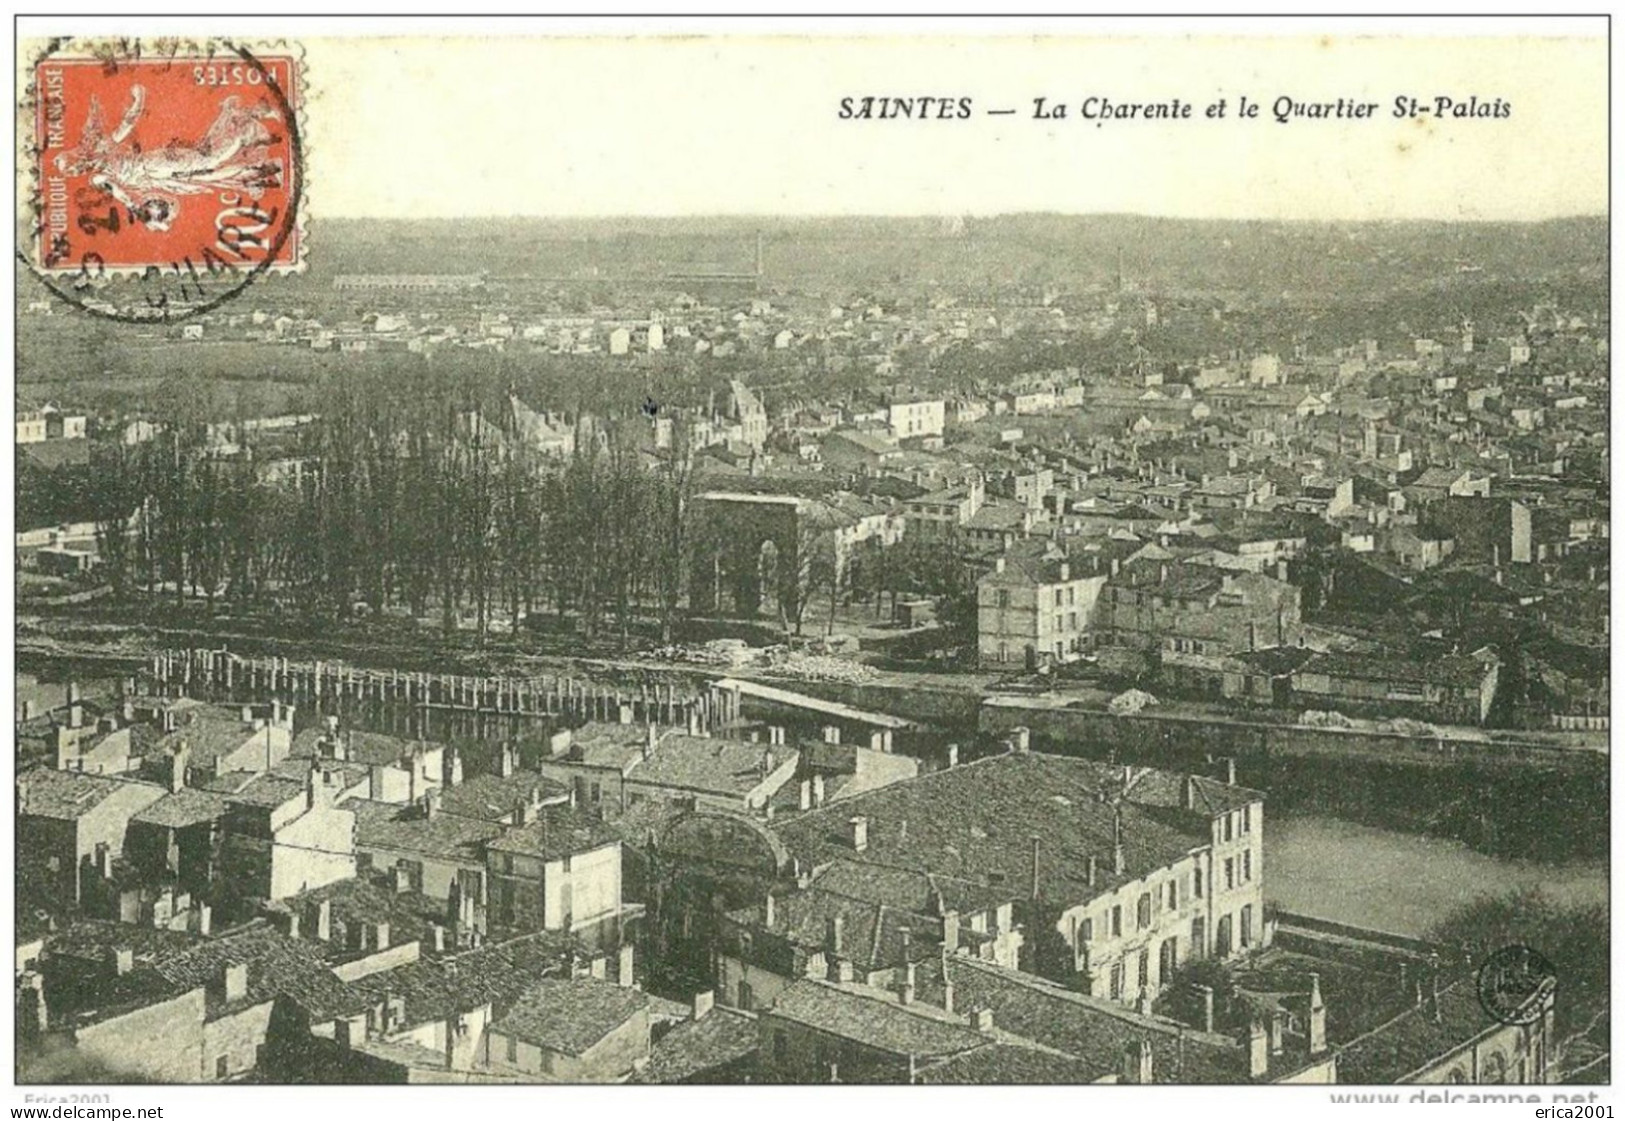 Saintes. Vue Sur Le Quartier Saint Palais Et La Charente. - Saintes